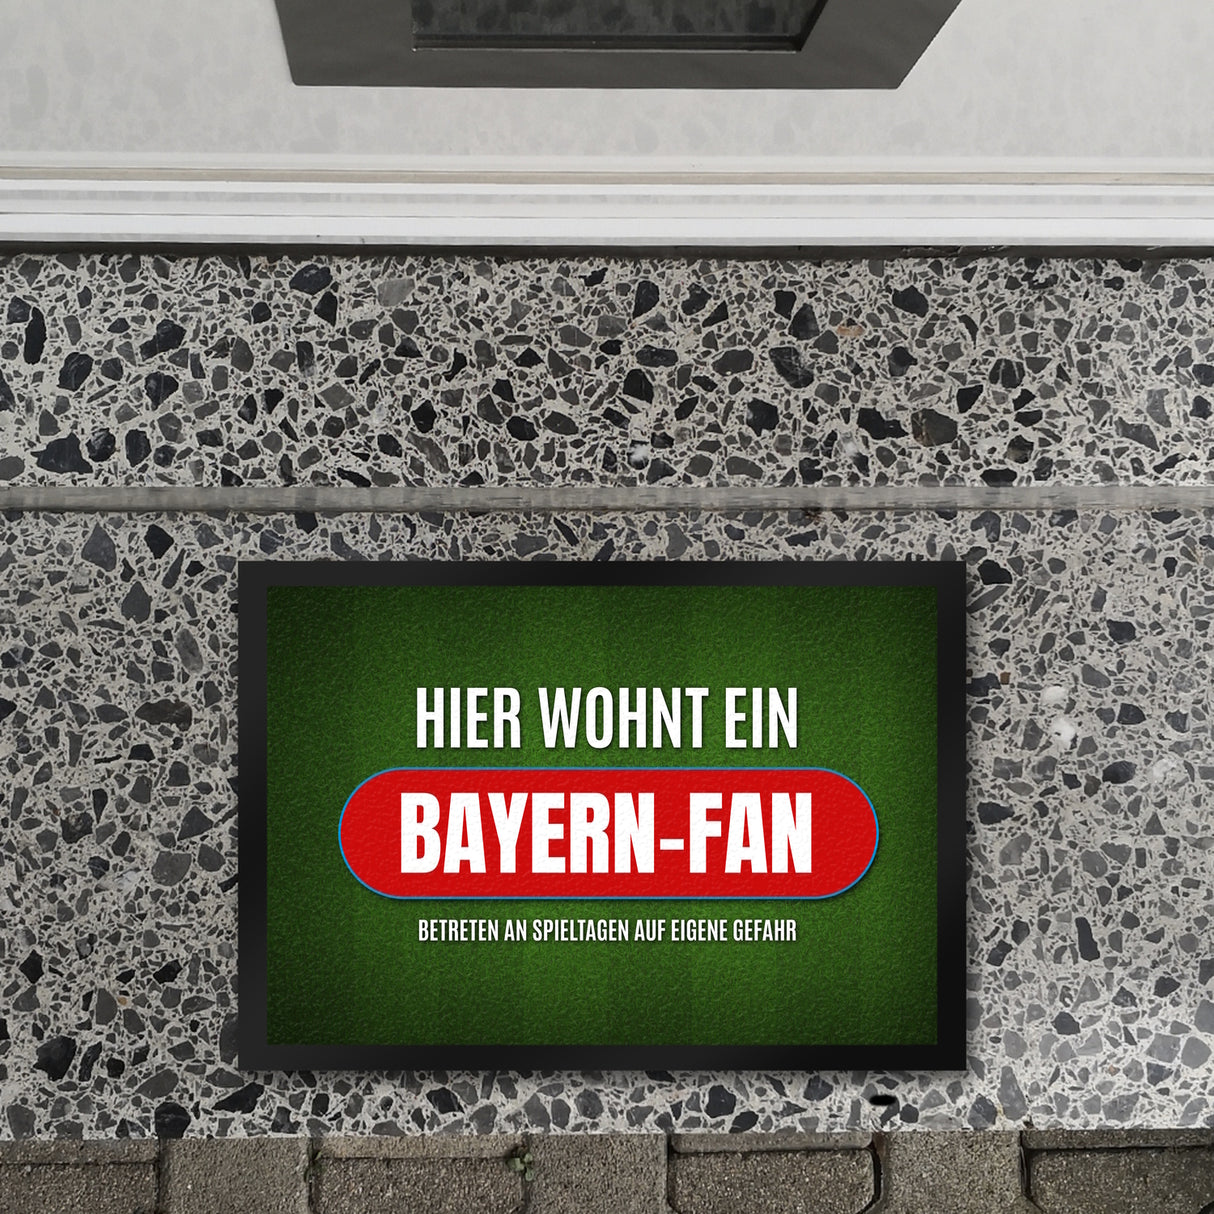 Hier wohnt ein Bayern-Fan Fußmatte mit Rasen Motiv